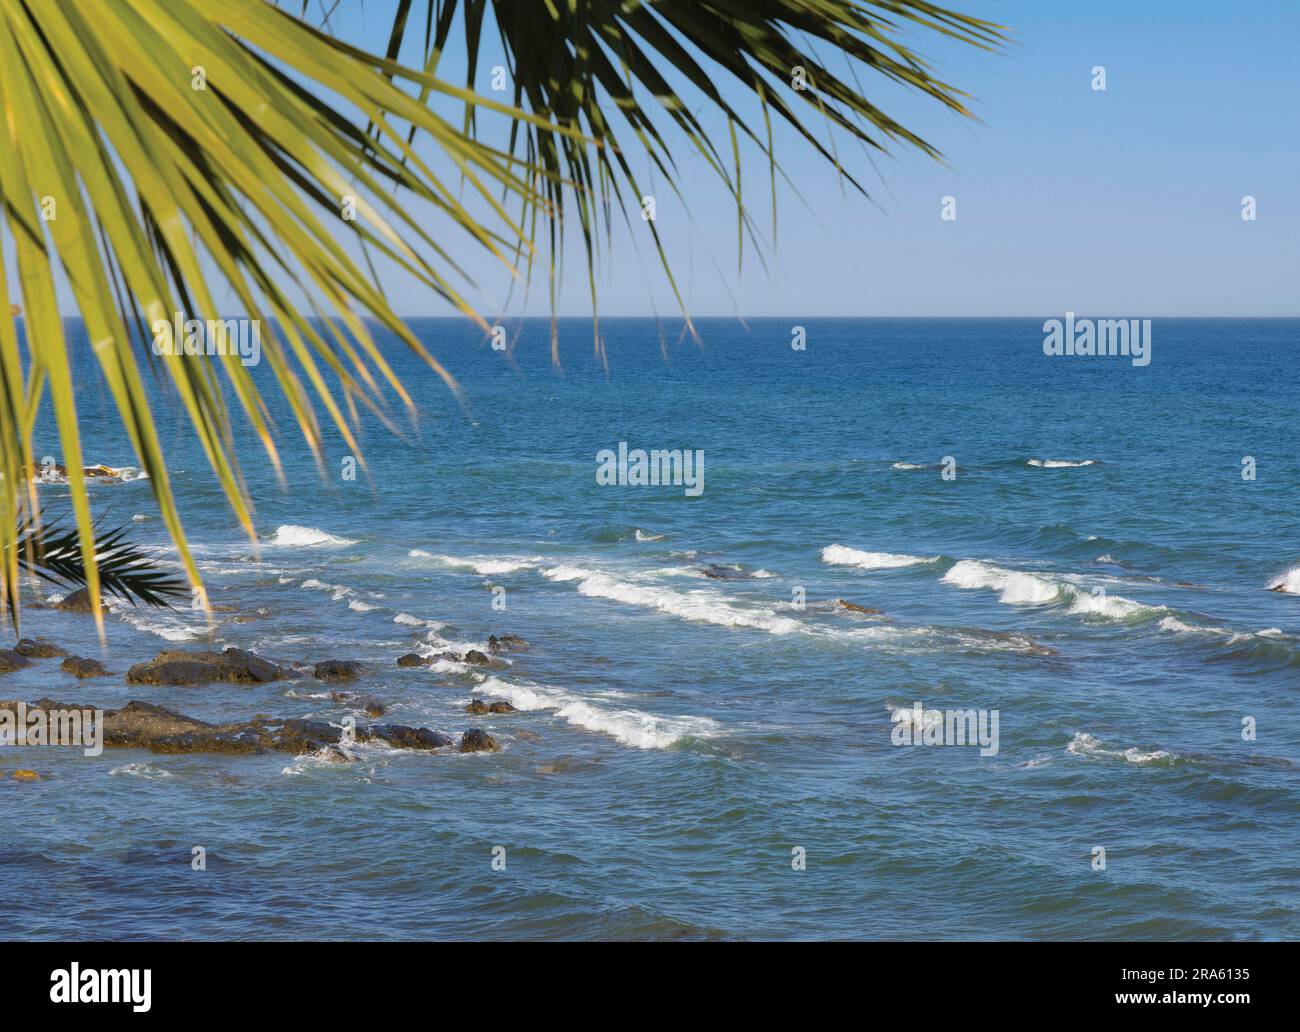 Fronde di palme e mare. Foto Stock